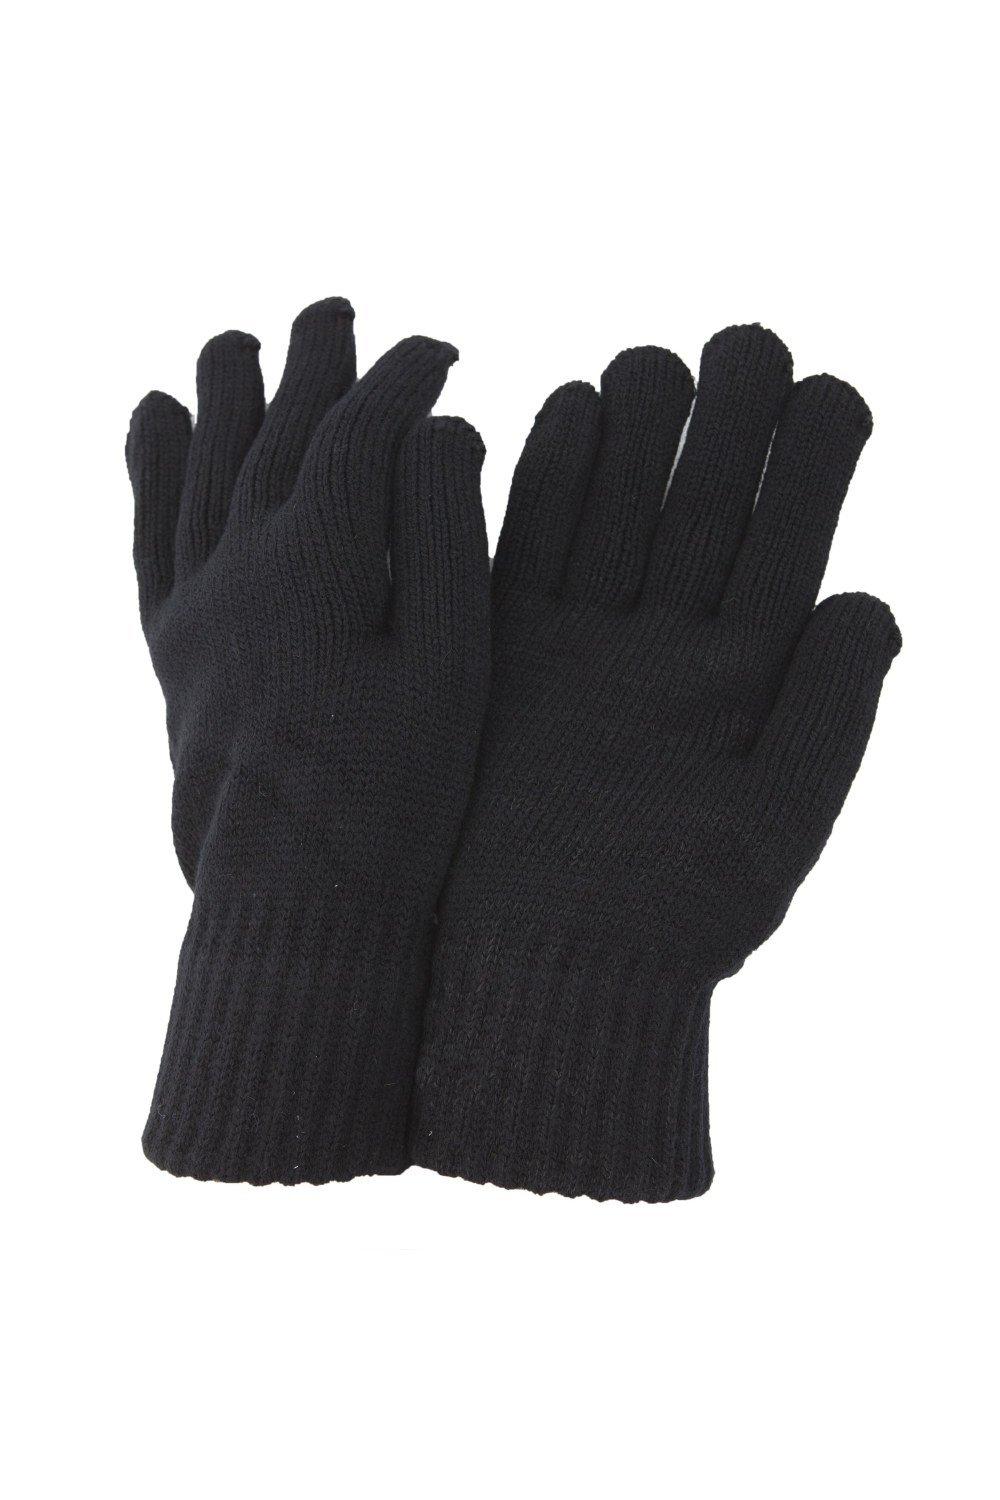 РАСПРОДАЖА - Термовязаные зимние перчатки Universal Textiles, черный перчатки трикотажные акрил цвет оранжевый двойная манжета россия сибртех